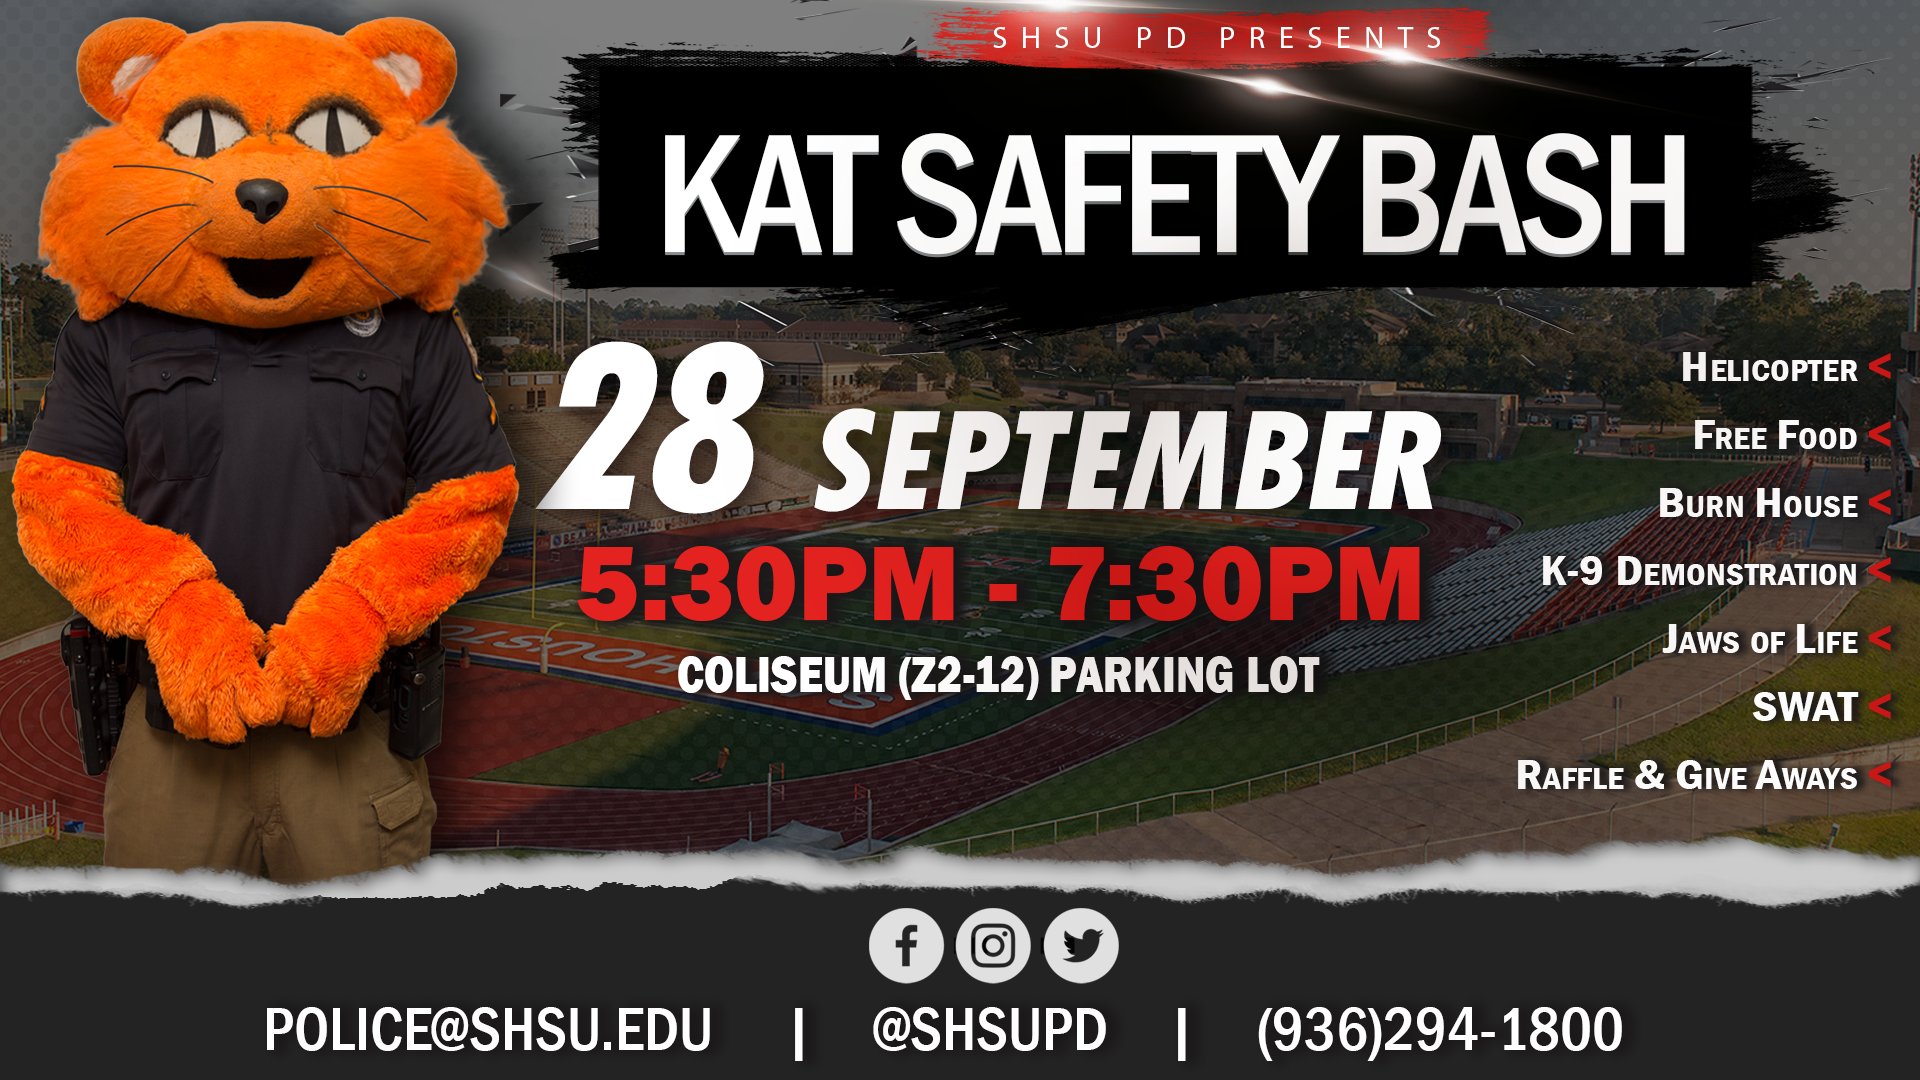 Kat Safety Bash Schedule